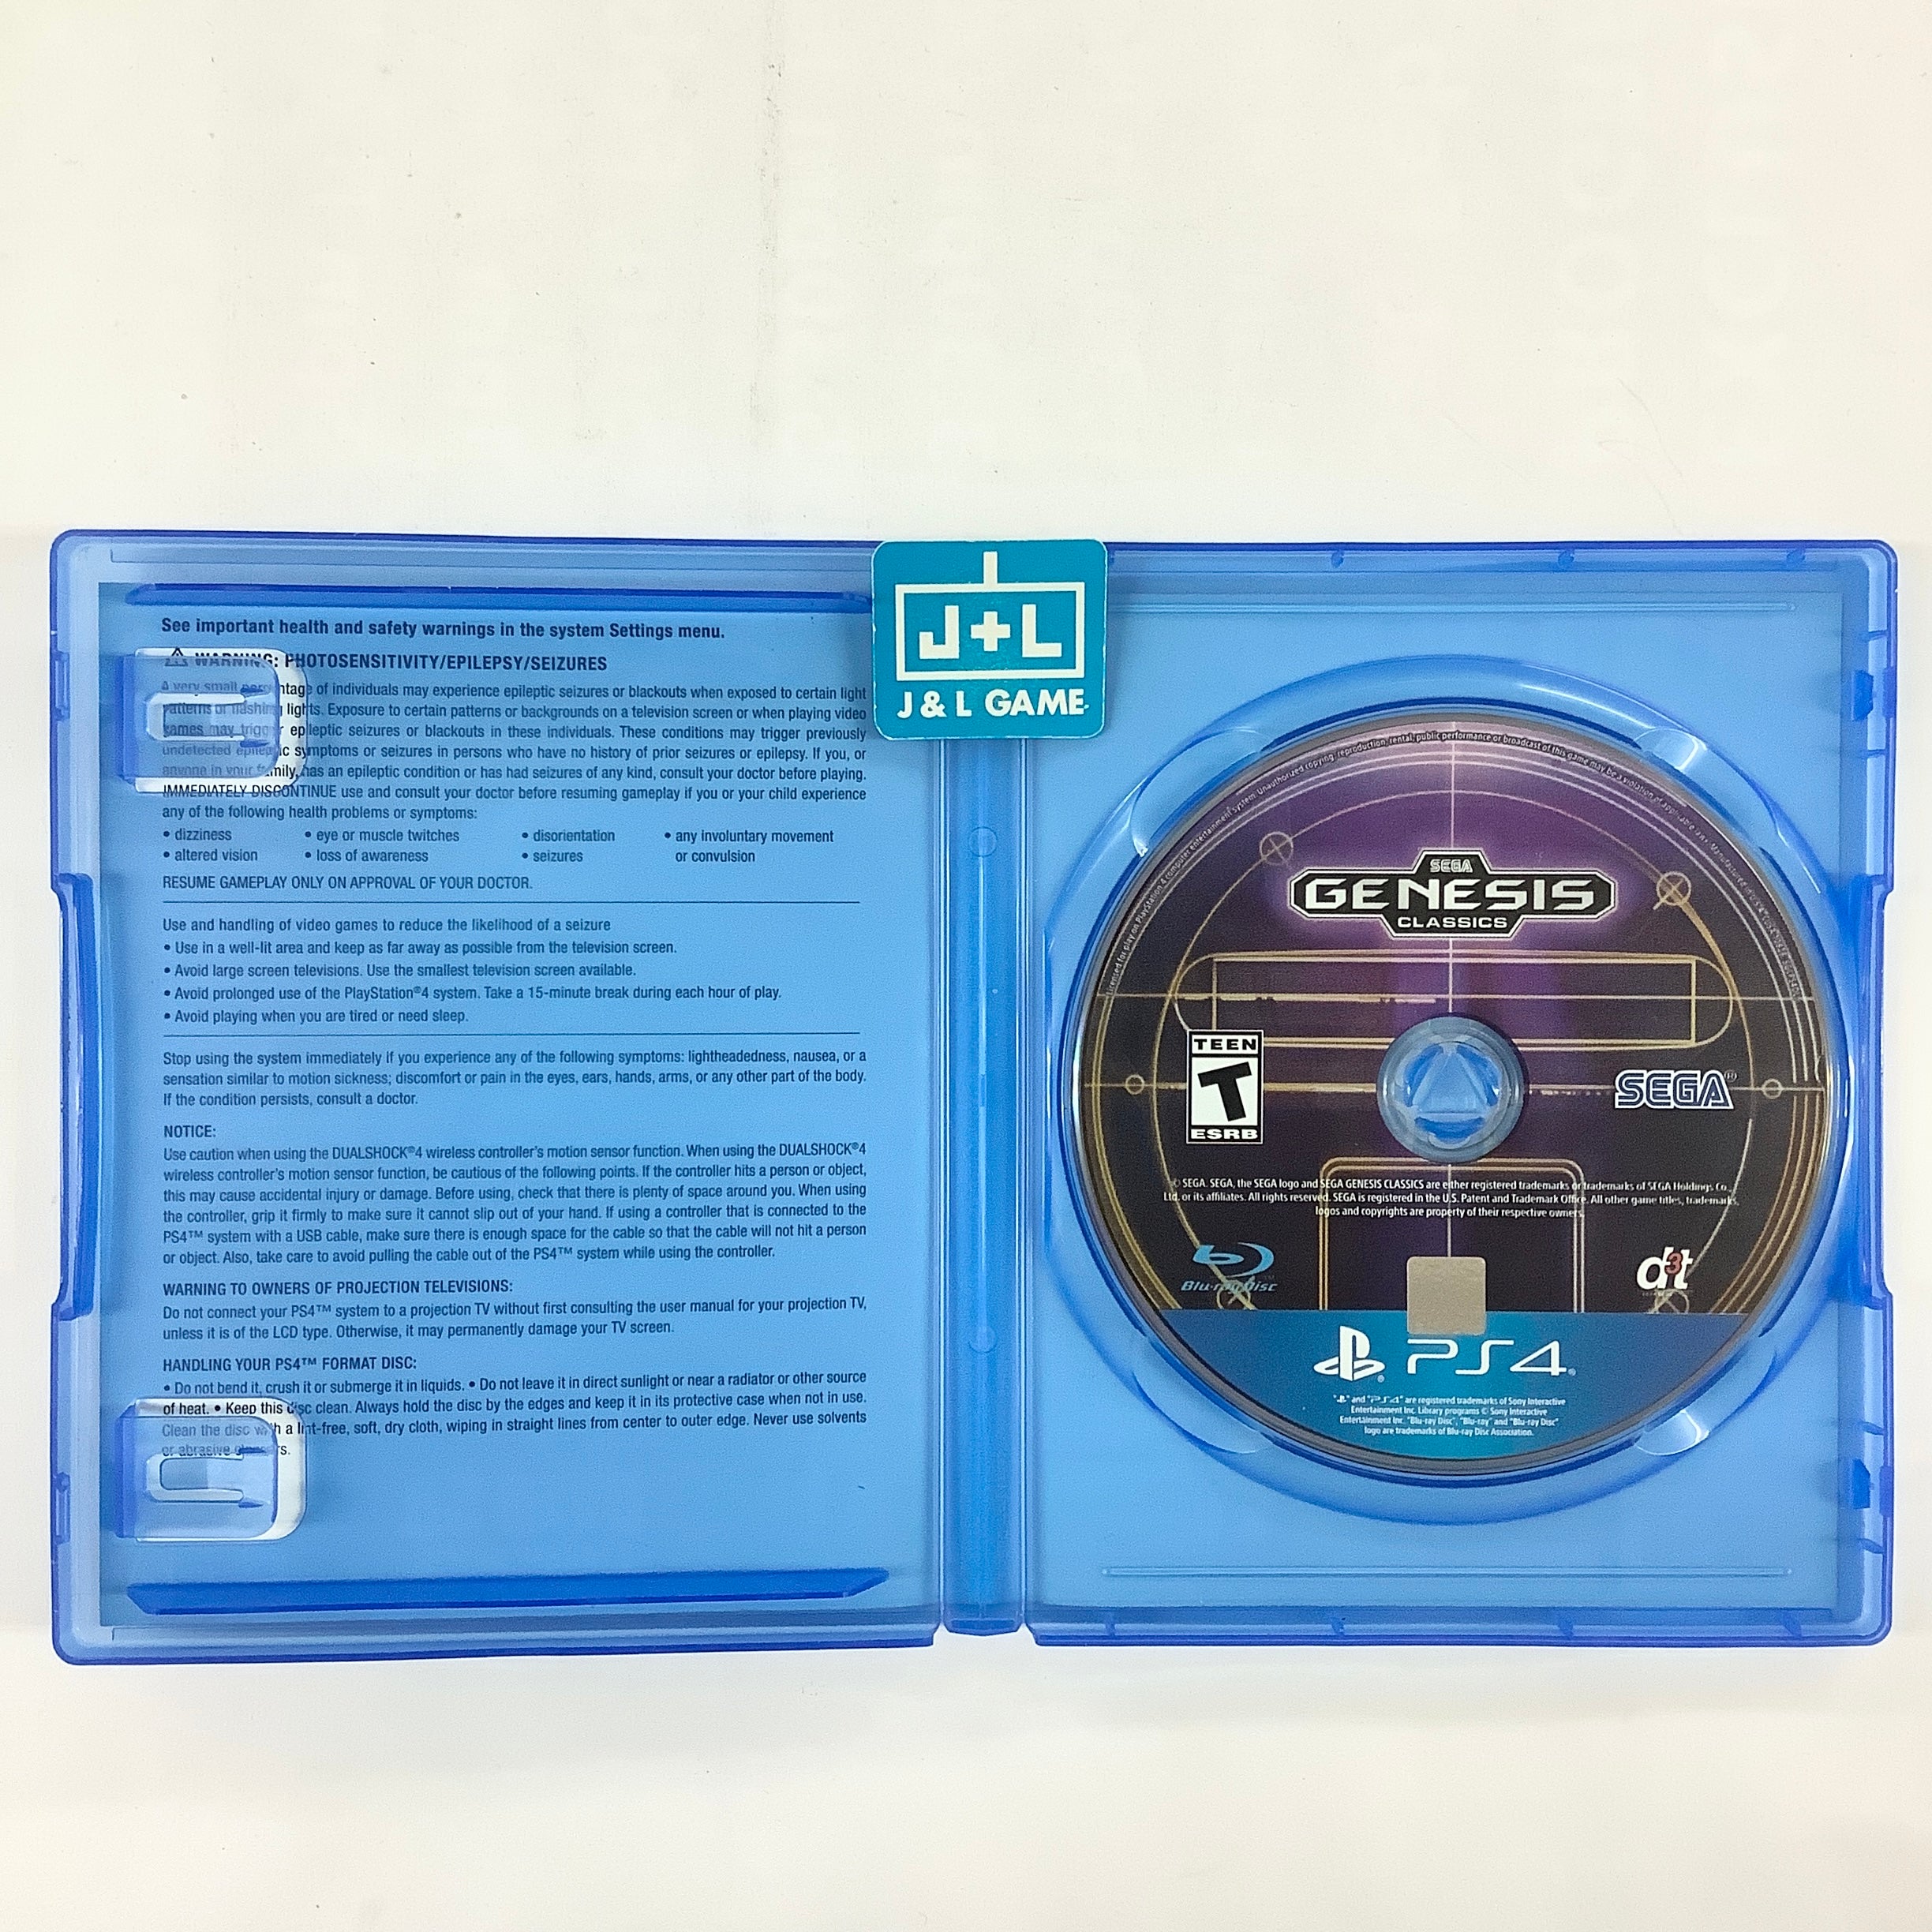 SEGA Genesis Classics - (PS4) PlayStation 4 [Pre-Owned] Video Games SEGA   